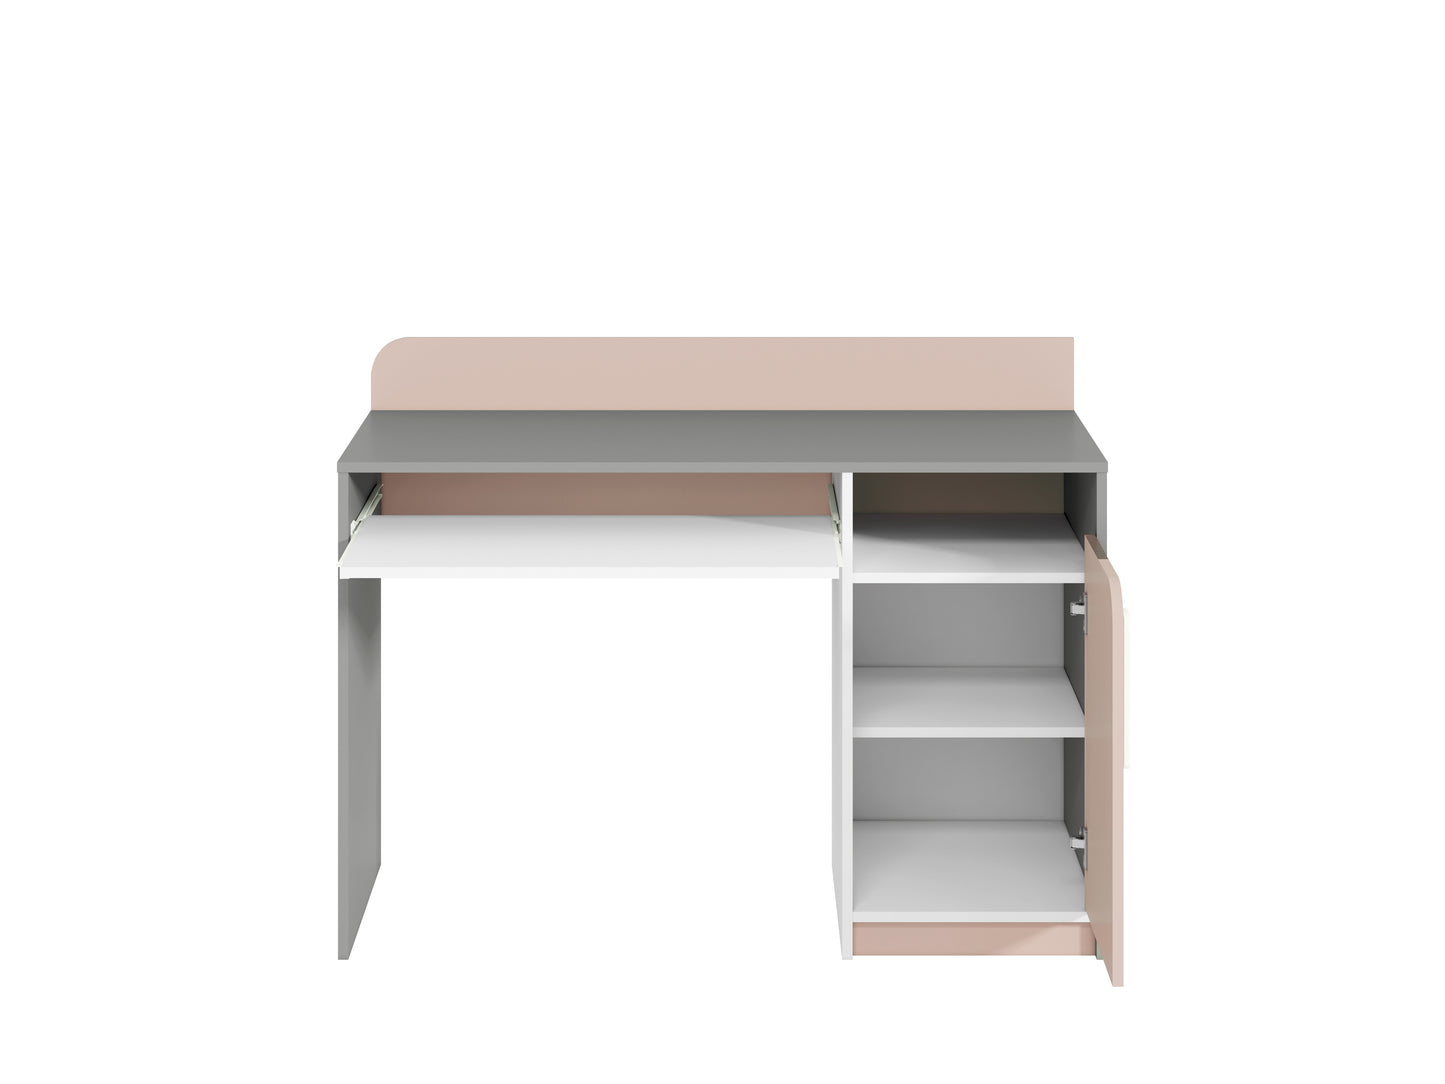 Kolorowe biurko komputerowe MICK z różowymi dodatkami oraz  ukazanie wnętrza znajdującego się za frontem, czyli funkcjonalnej półki.